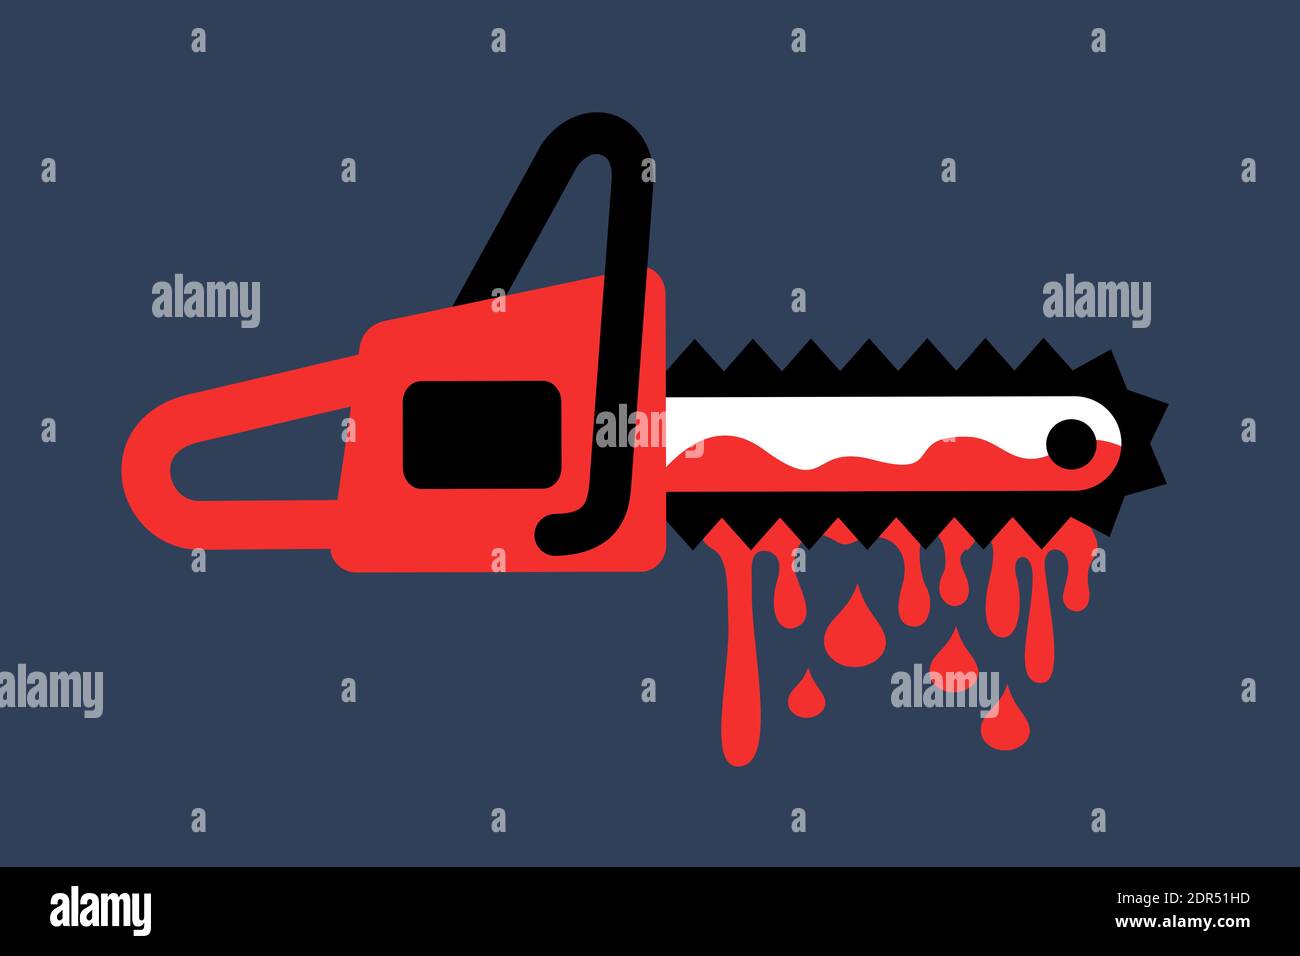 Mechanische Säge und Kettensäge wird durch rotes blutiges Blut - Unfall  oder Werkzeug und Maschine als gruselige, gruselige und gruselige  gewalttätige Waffe befleckt. Vektorgrafik Stockfotografie - Alamy